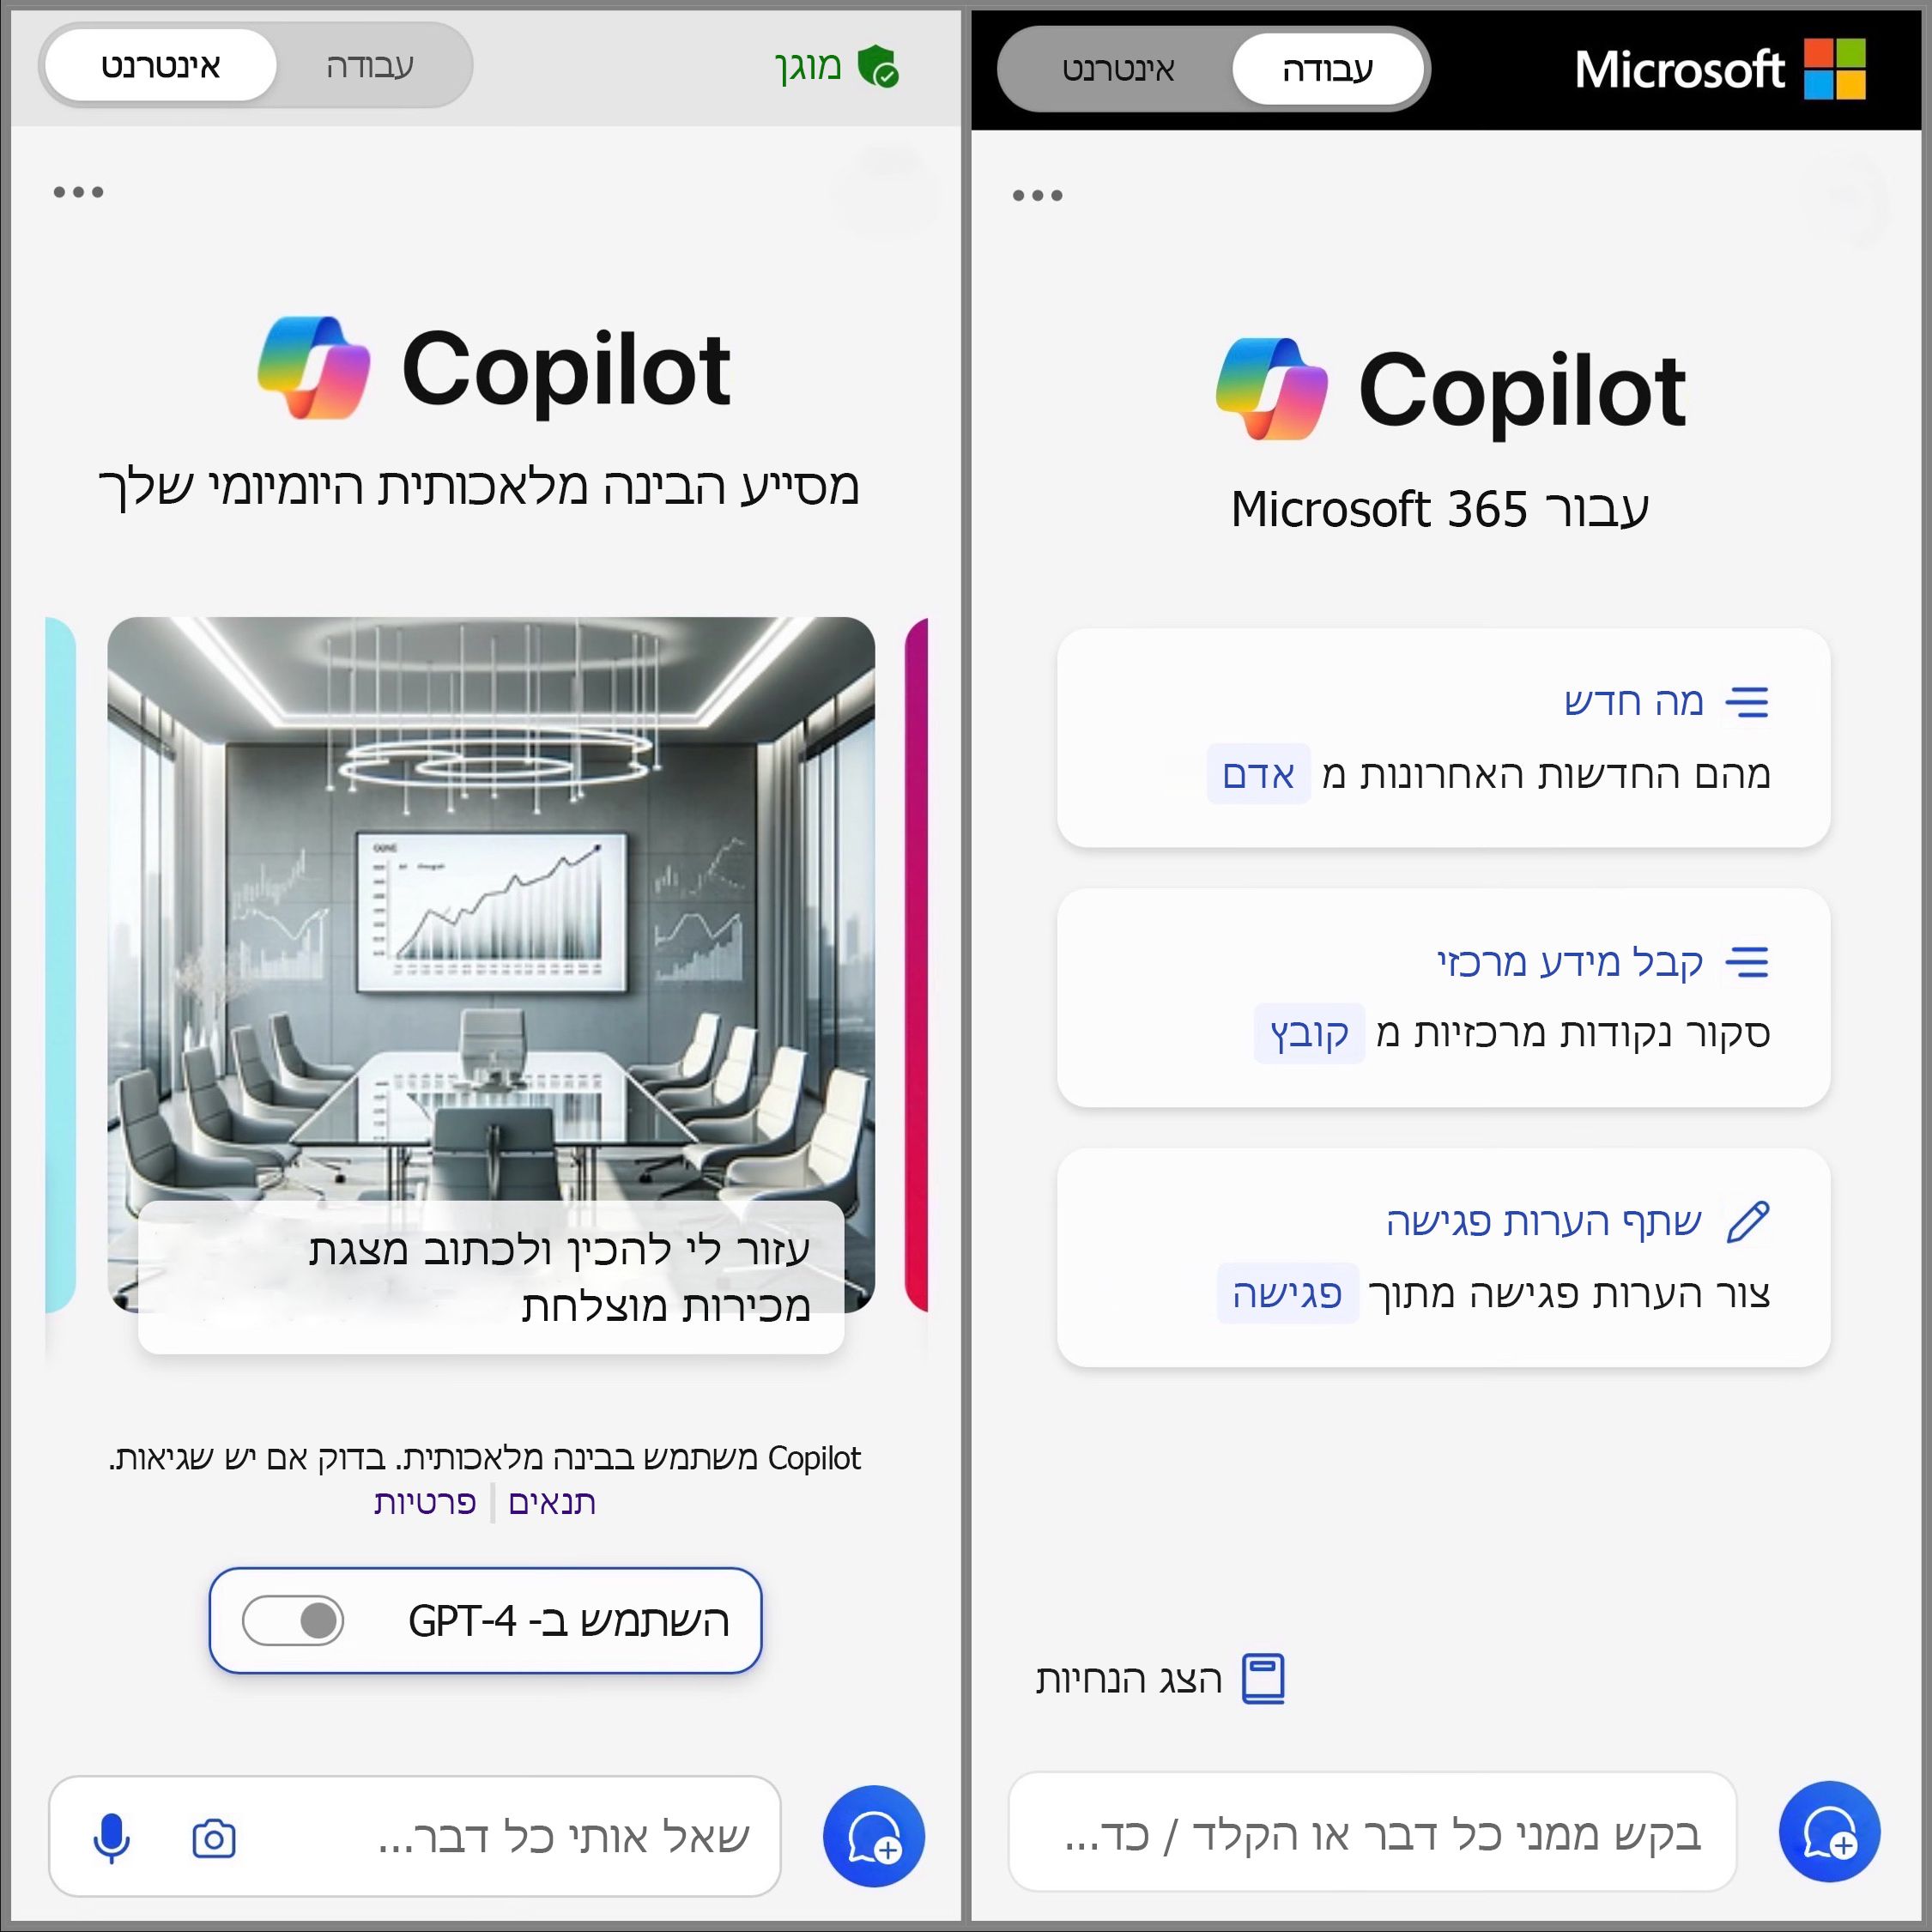 מציג את המסך של Copilot Mobile במצב דו-מצבי לאינטרנט ו'עבוד' כדי לגשת לבקשת הצ'אט.